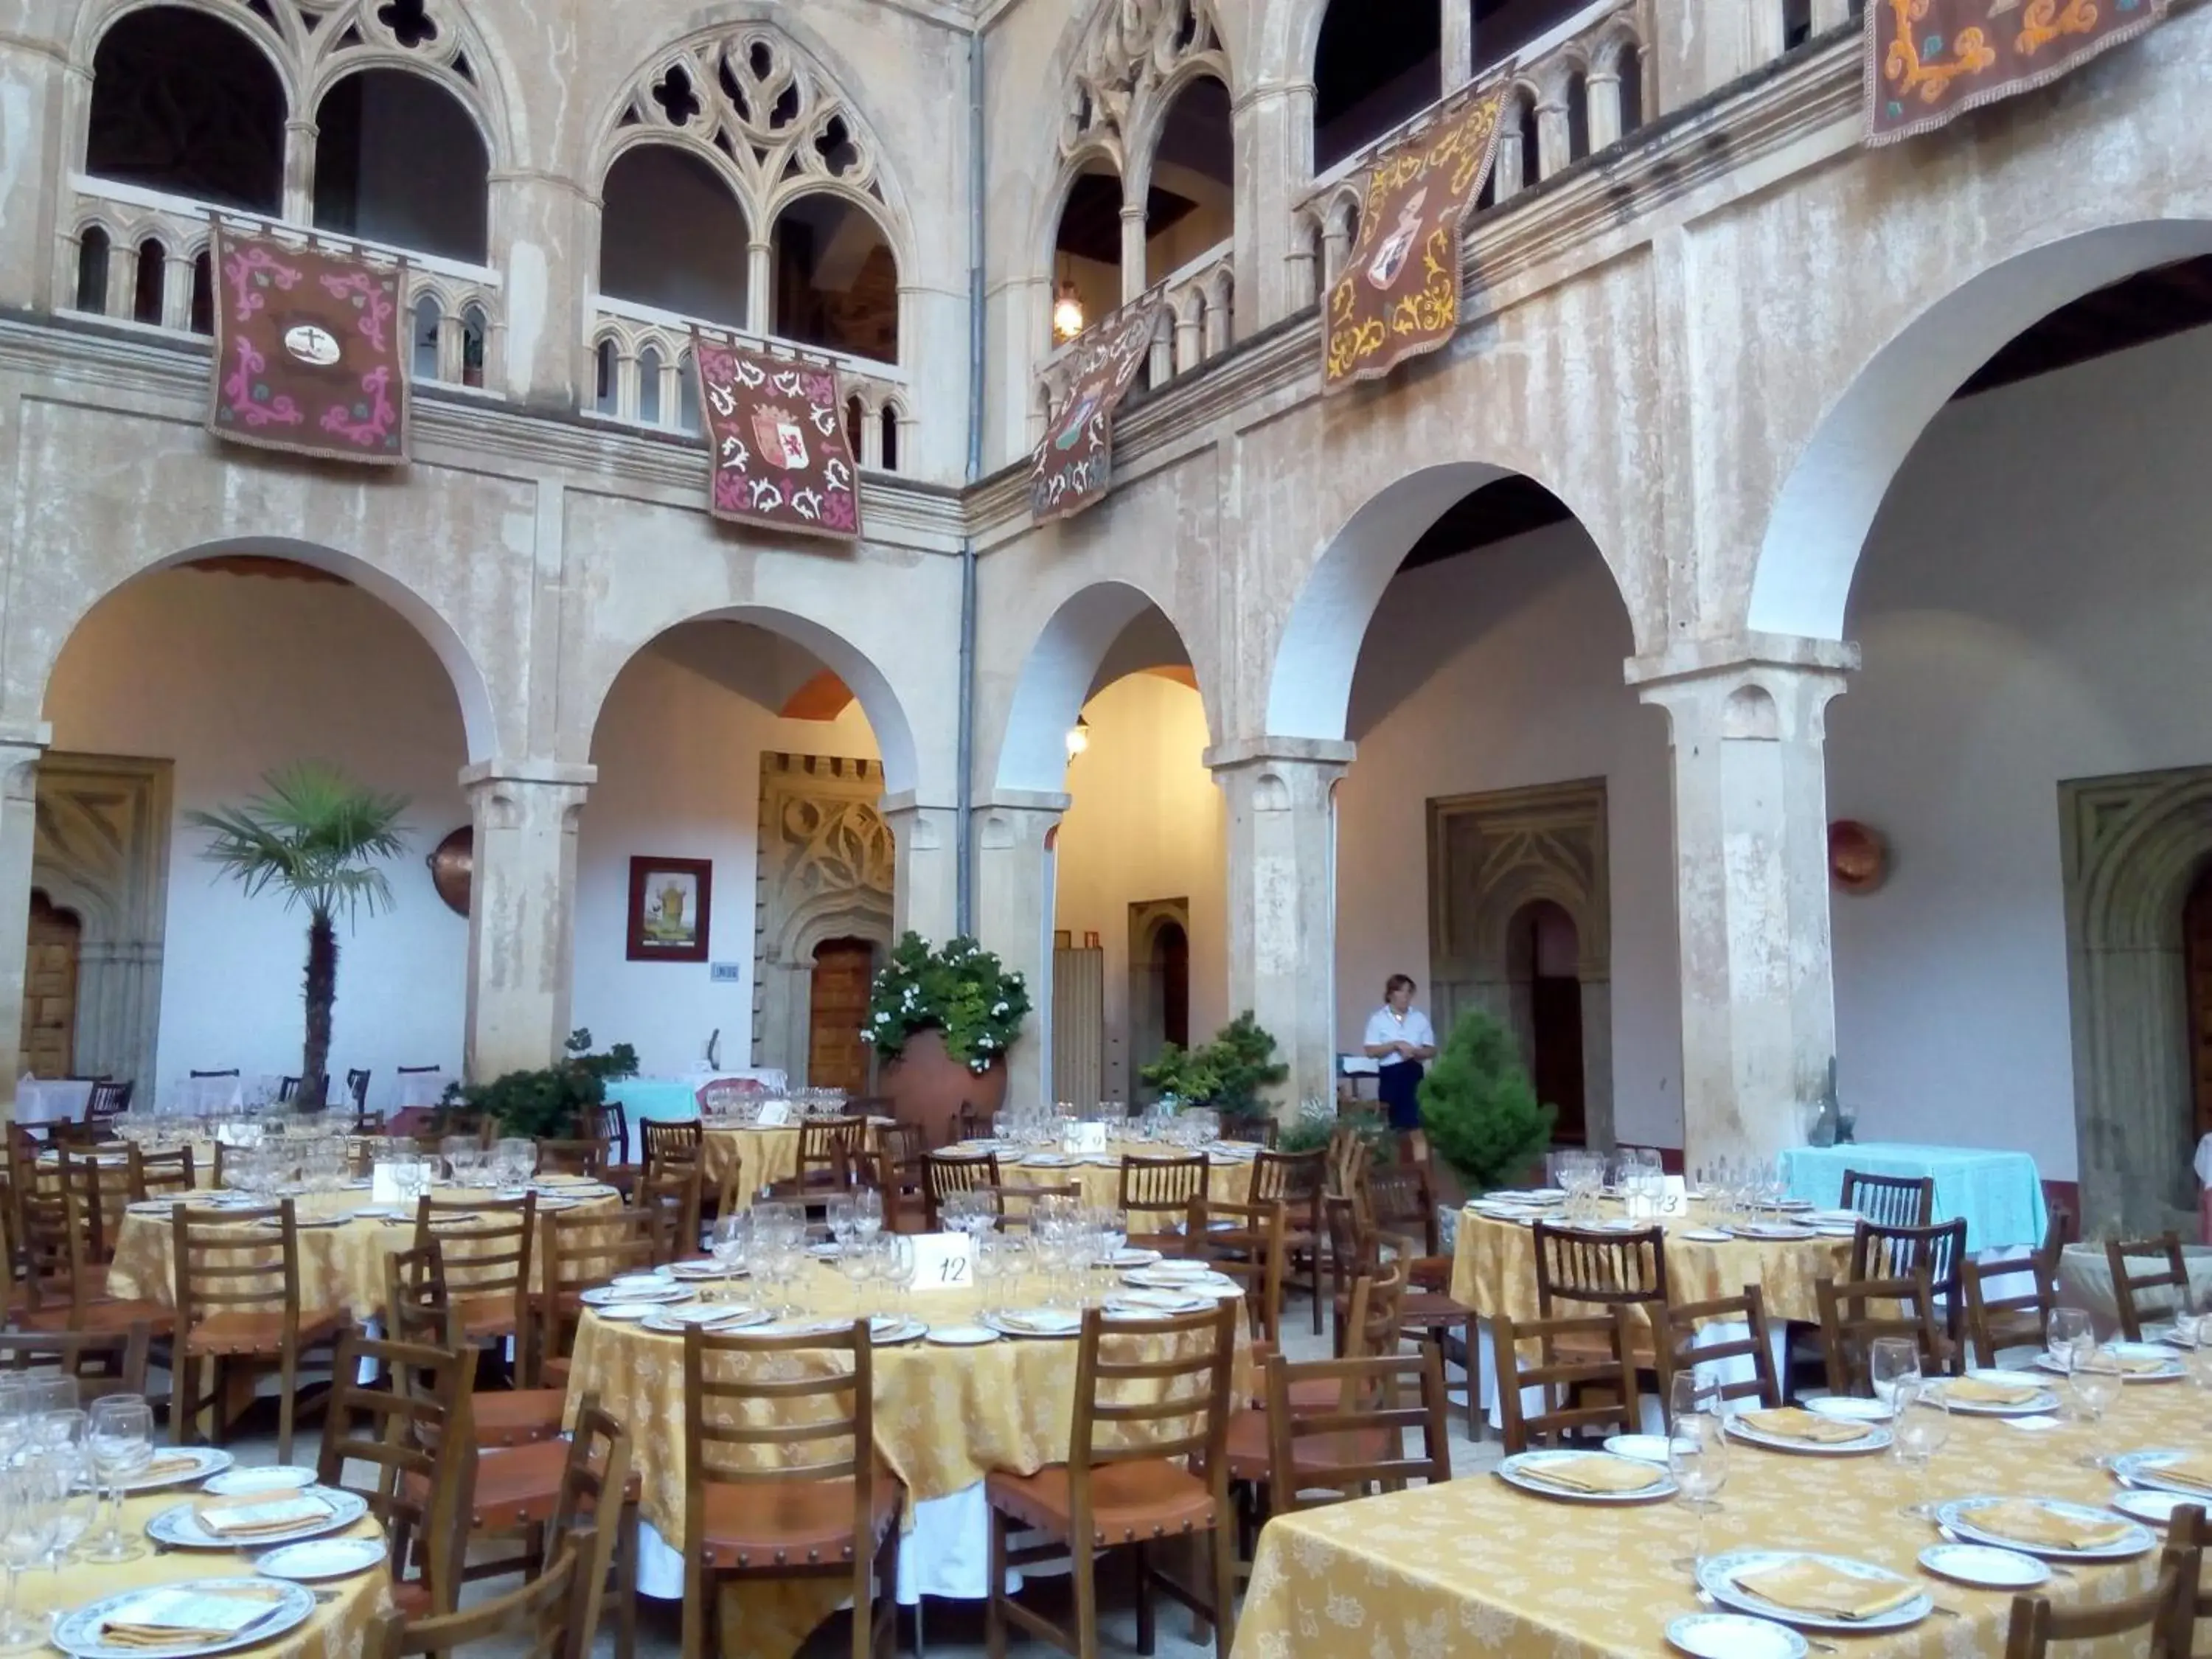 Banquet/Function facilities, Restaurant/Places to Eat in Hospederia del Real Monasterio